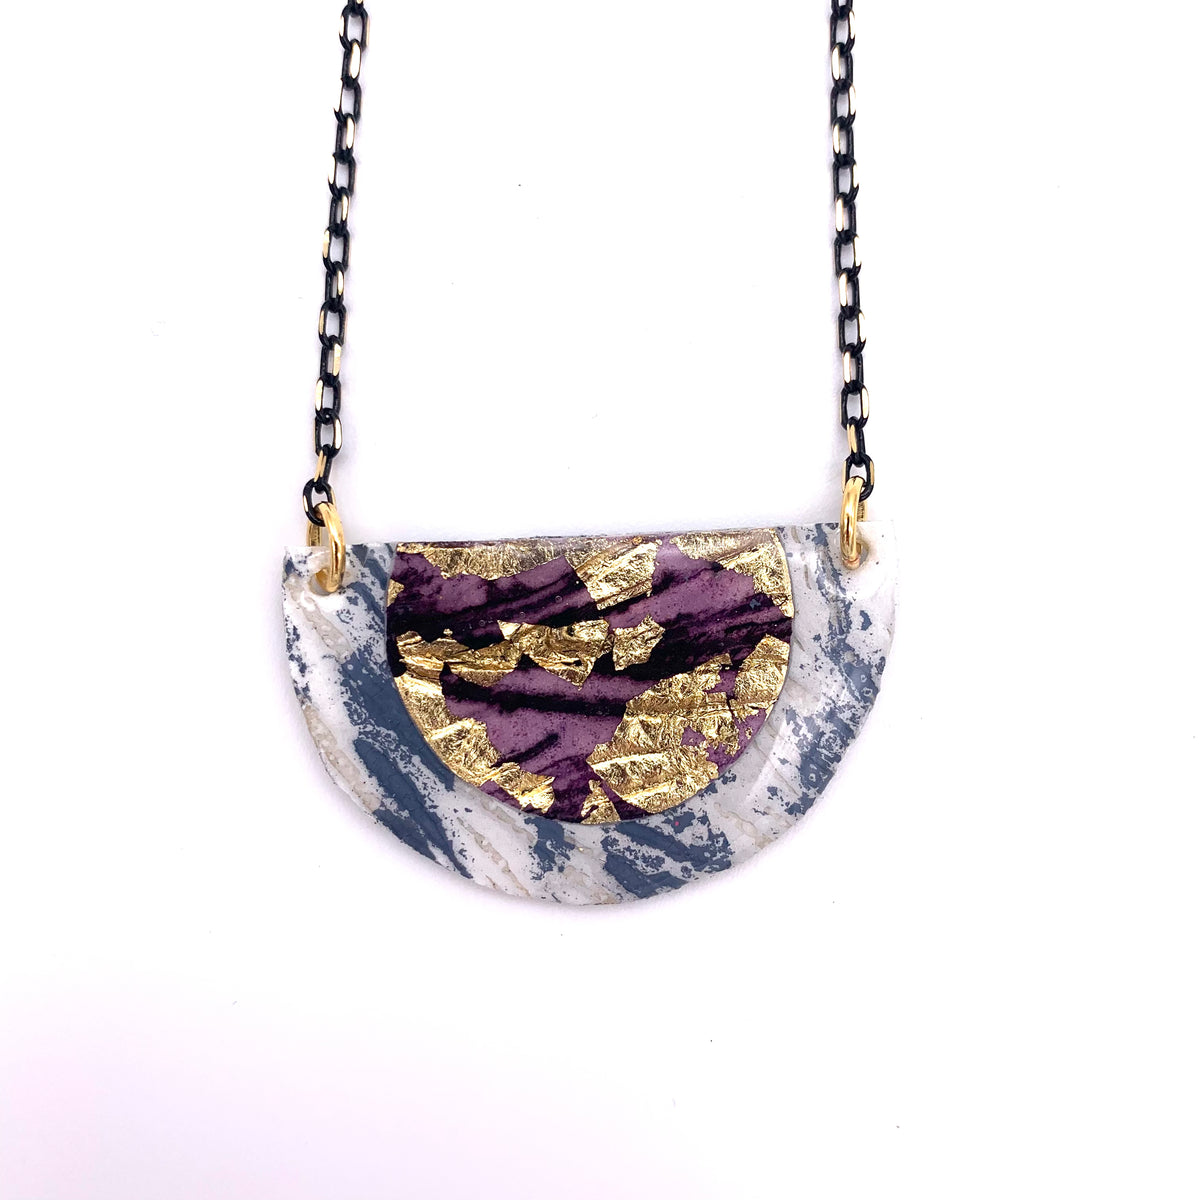 Ovette batik textile necklace in dove/gold/aubergine